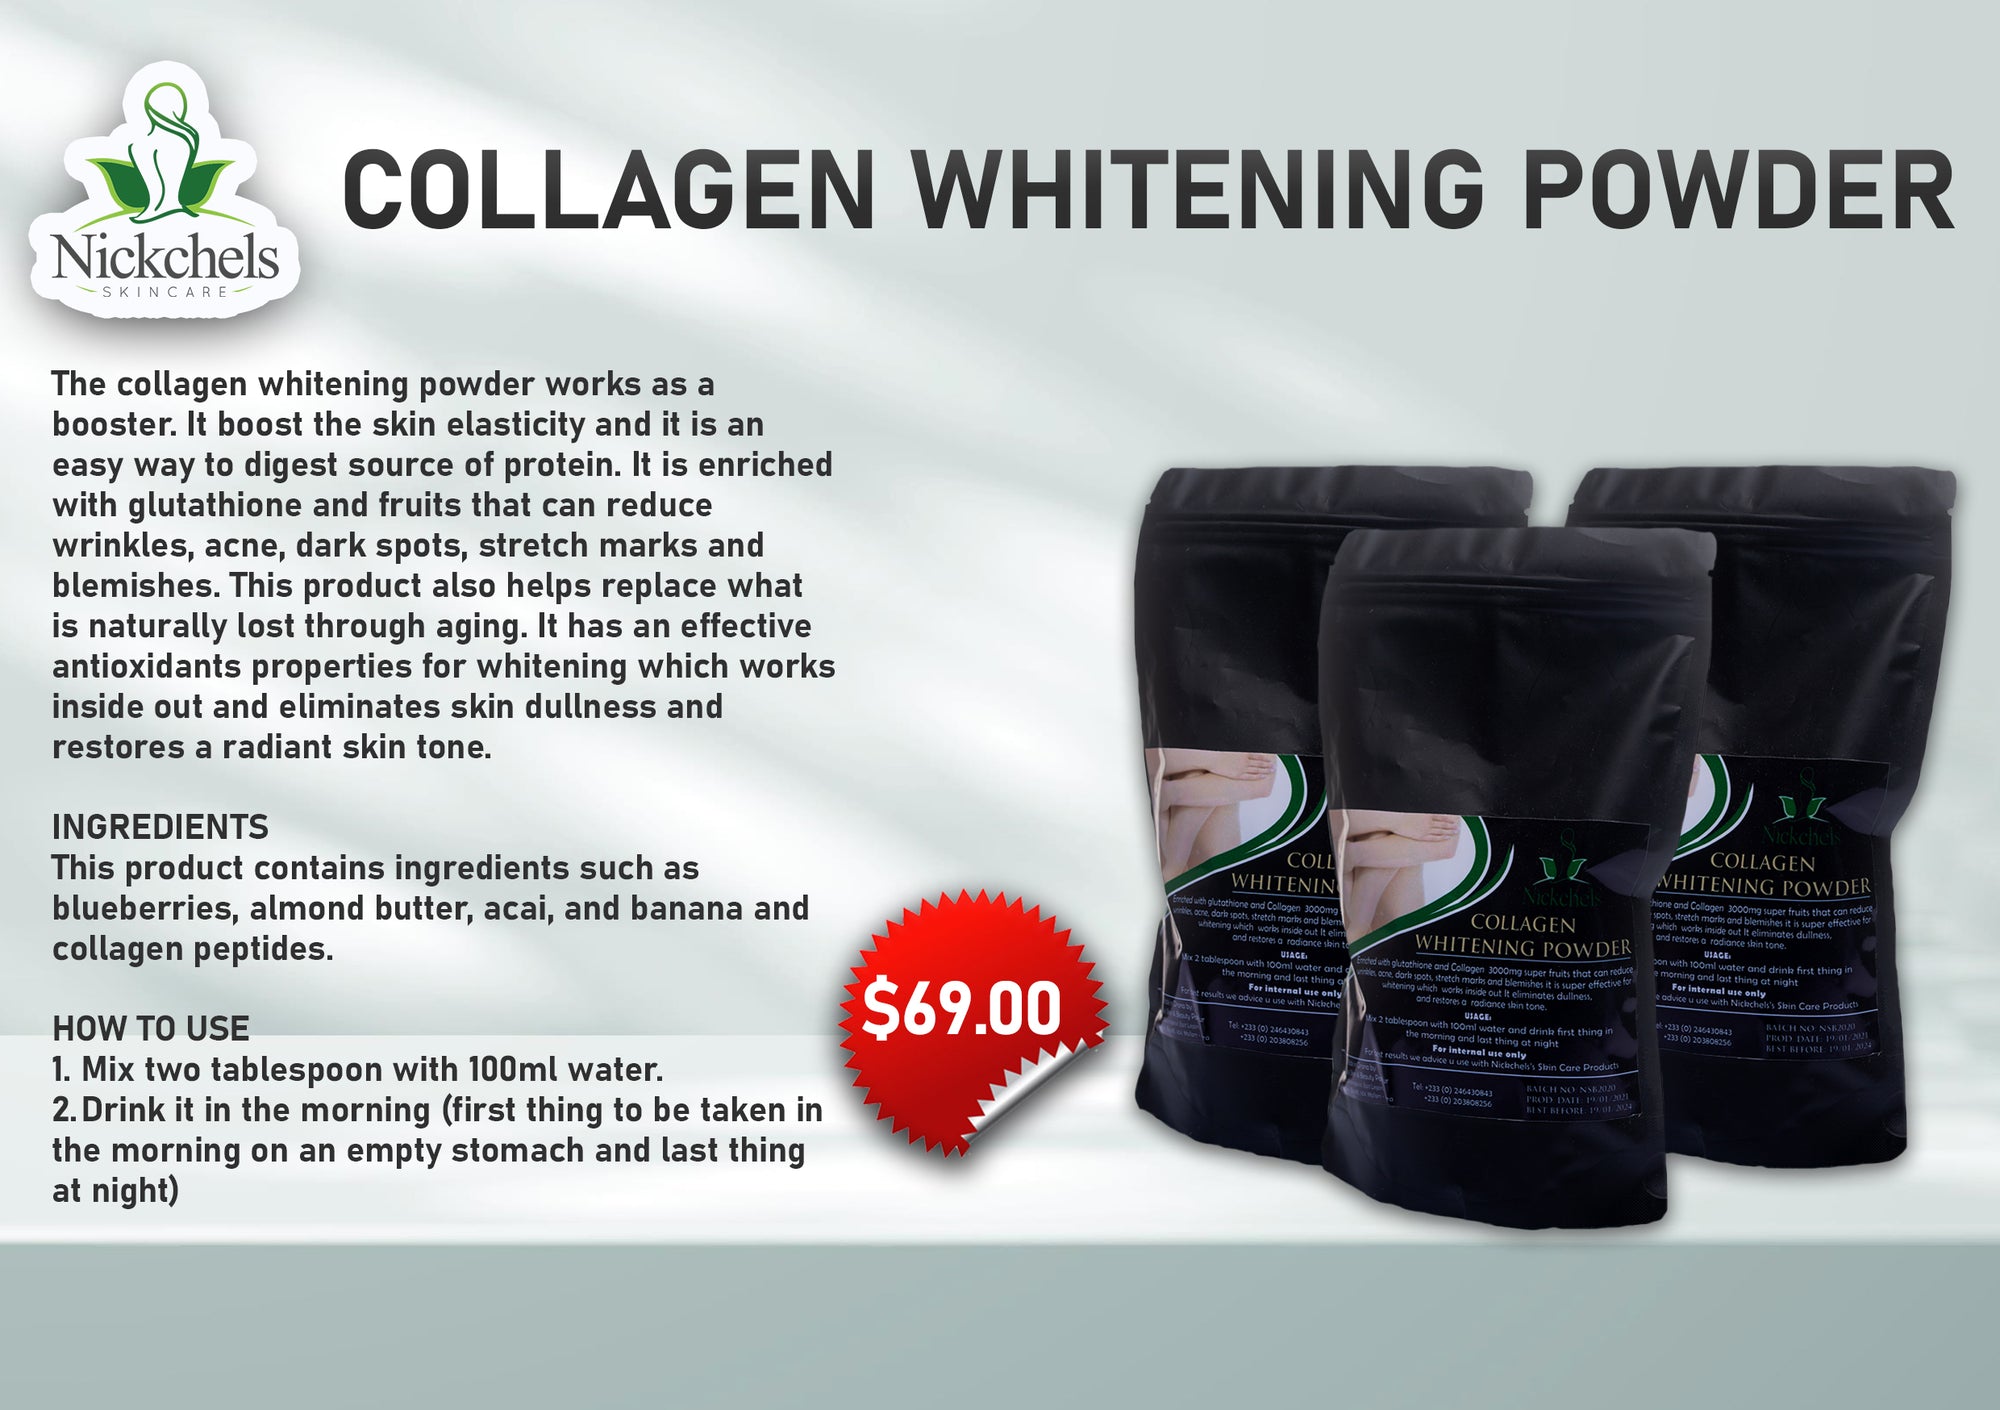 Collagen whitening powder